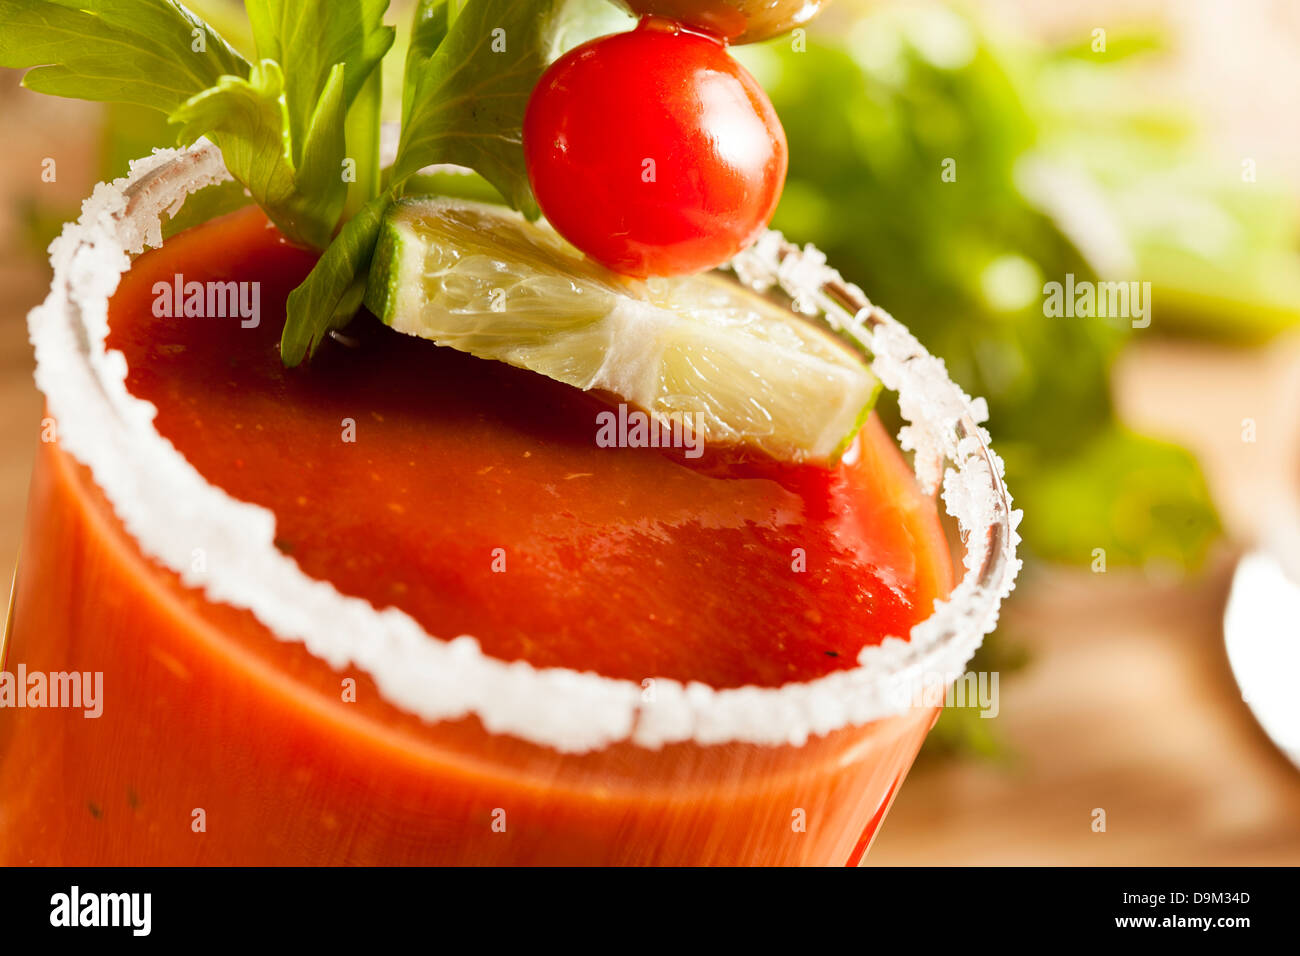 Würzige Bloody Mary alkoholische Getränk mit eine Tomate garnieren Stockfoto